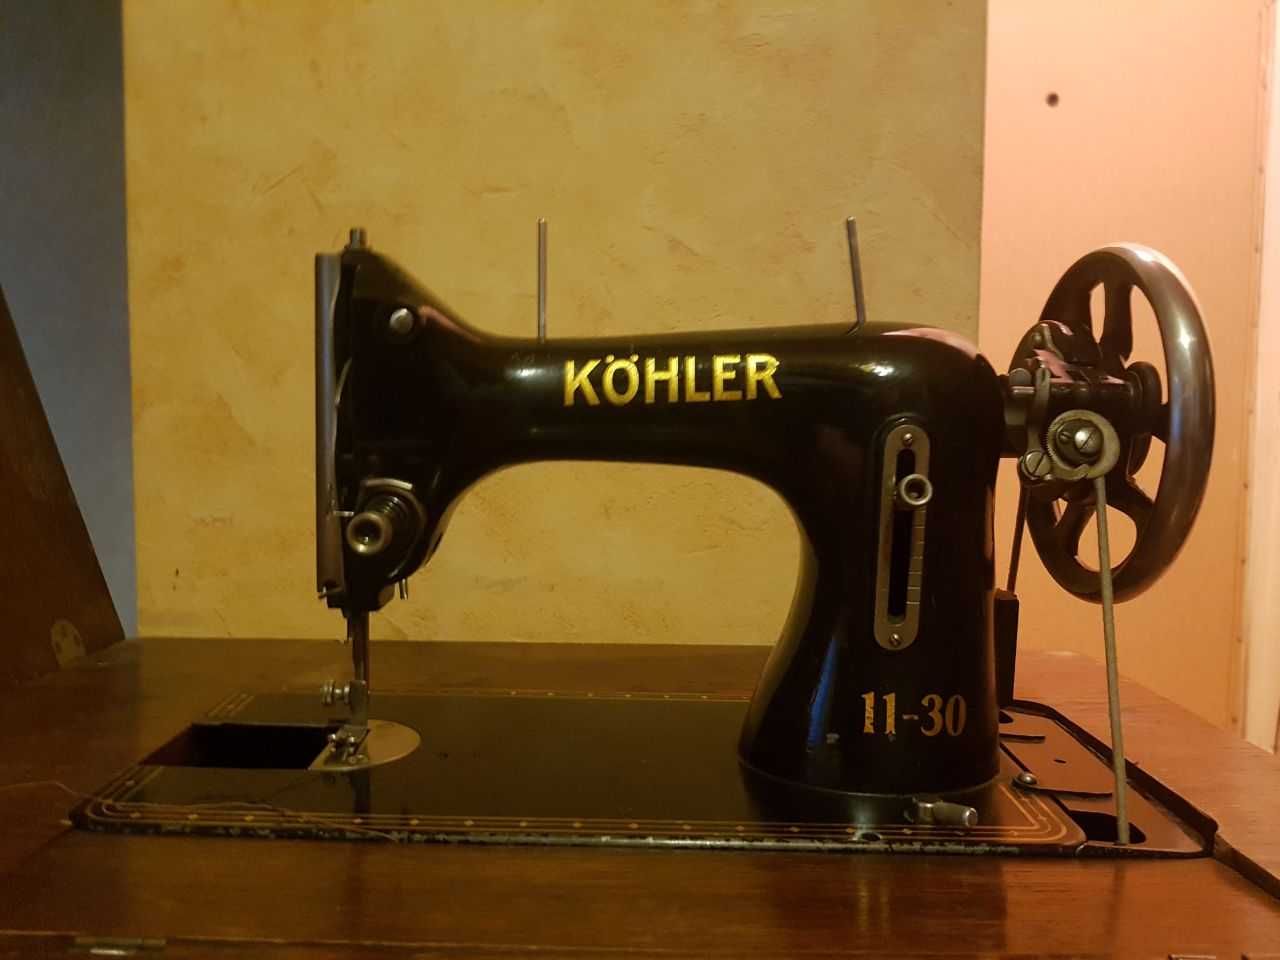 Швейная машинка Kohler 11-30 с тумбой